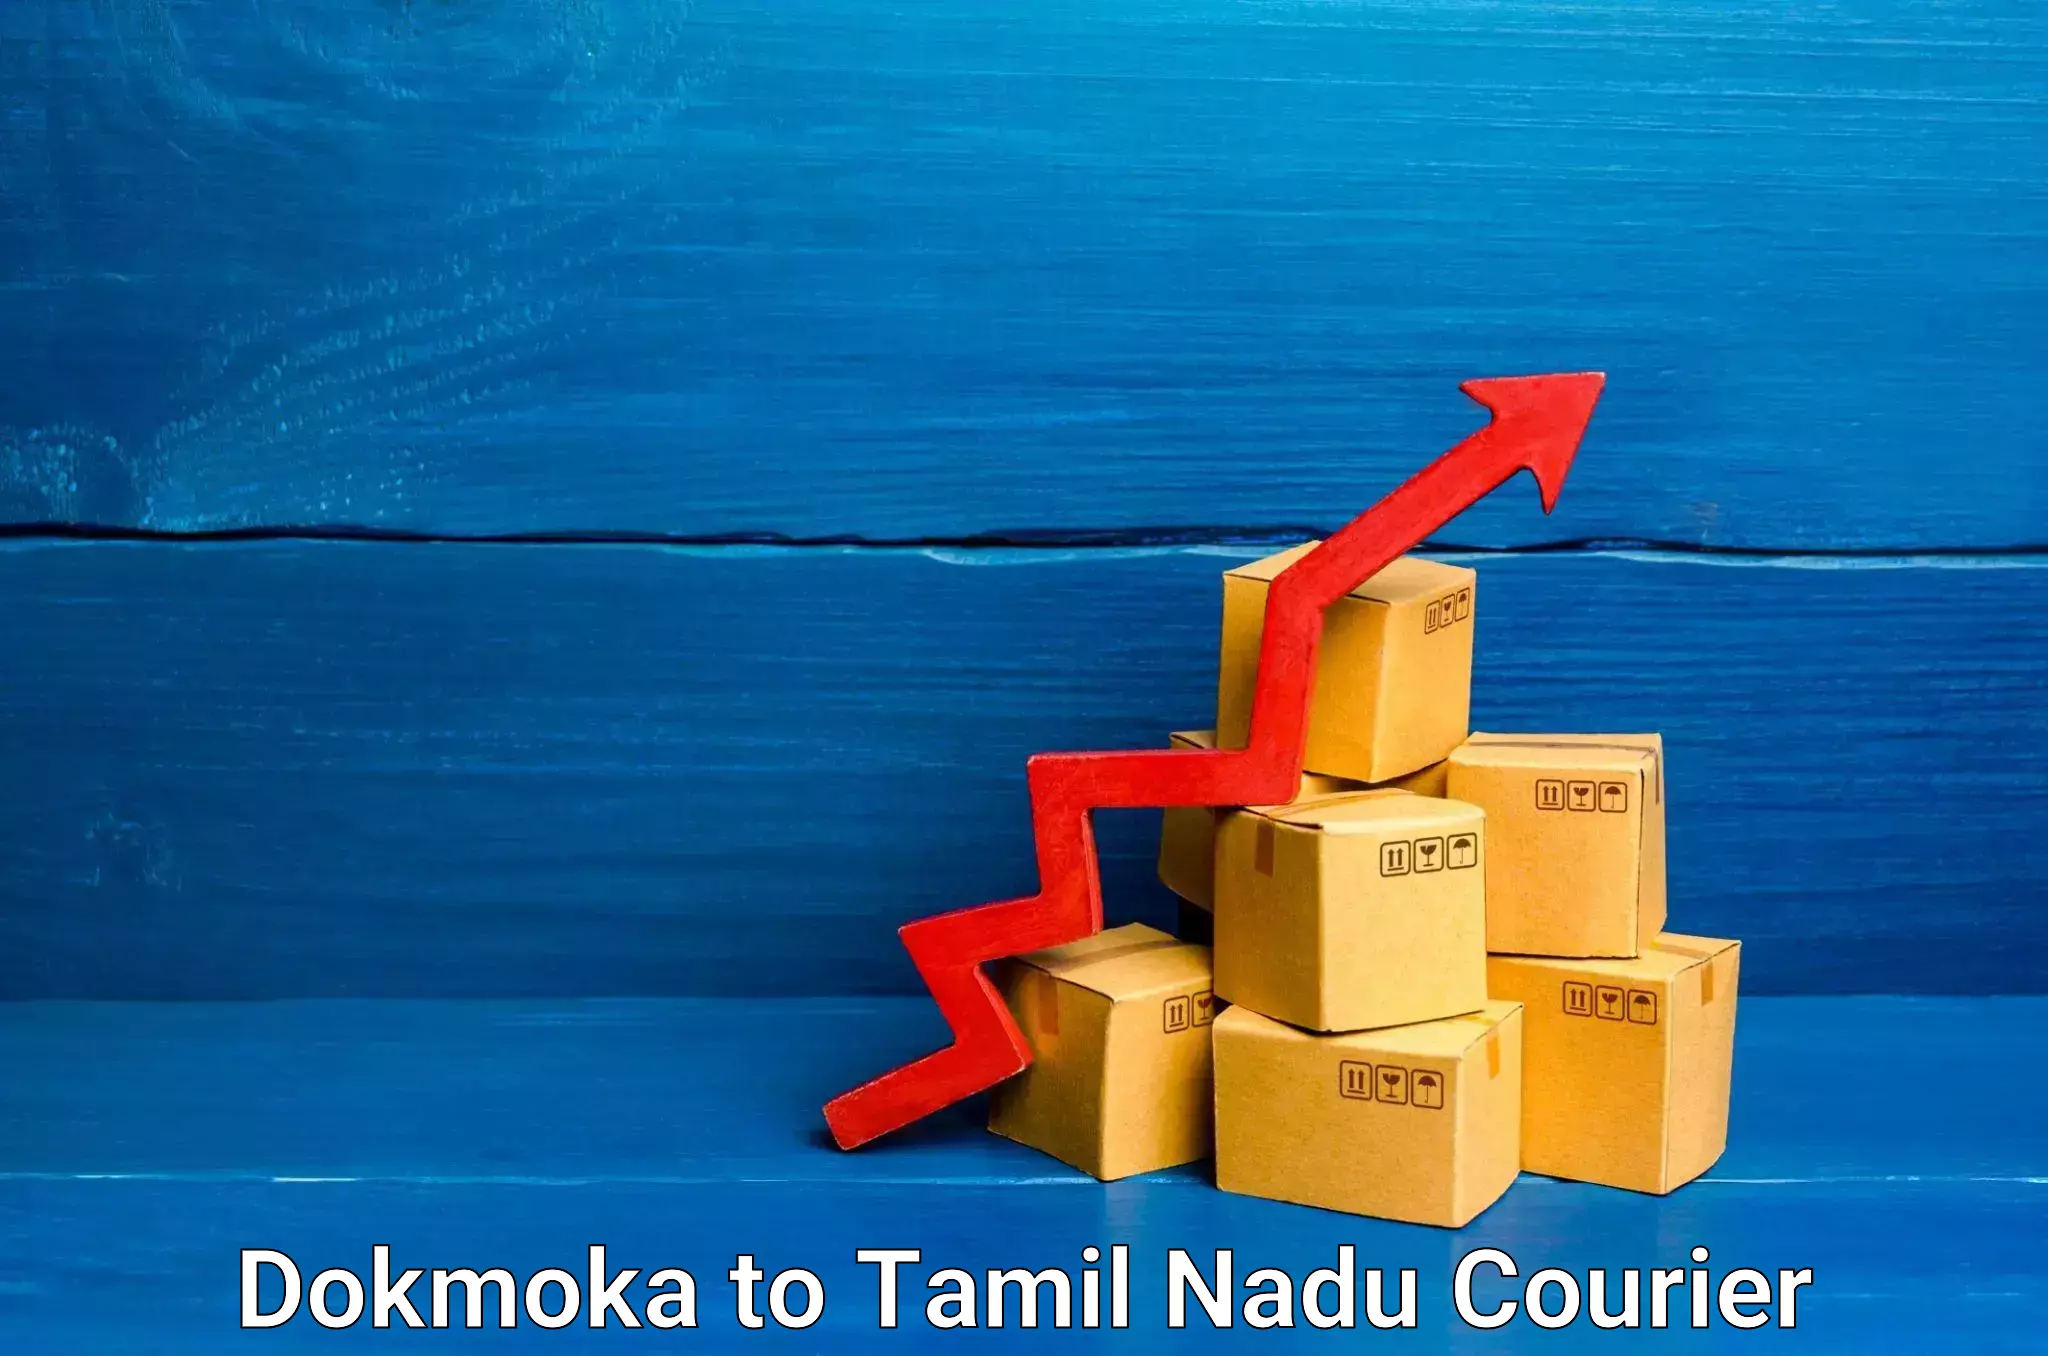 Efficient order fulfillment Dokmoka to Tamil Nadu